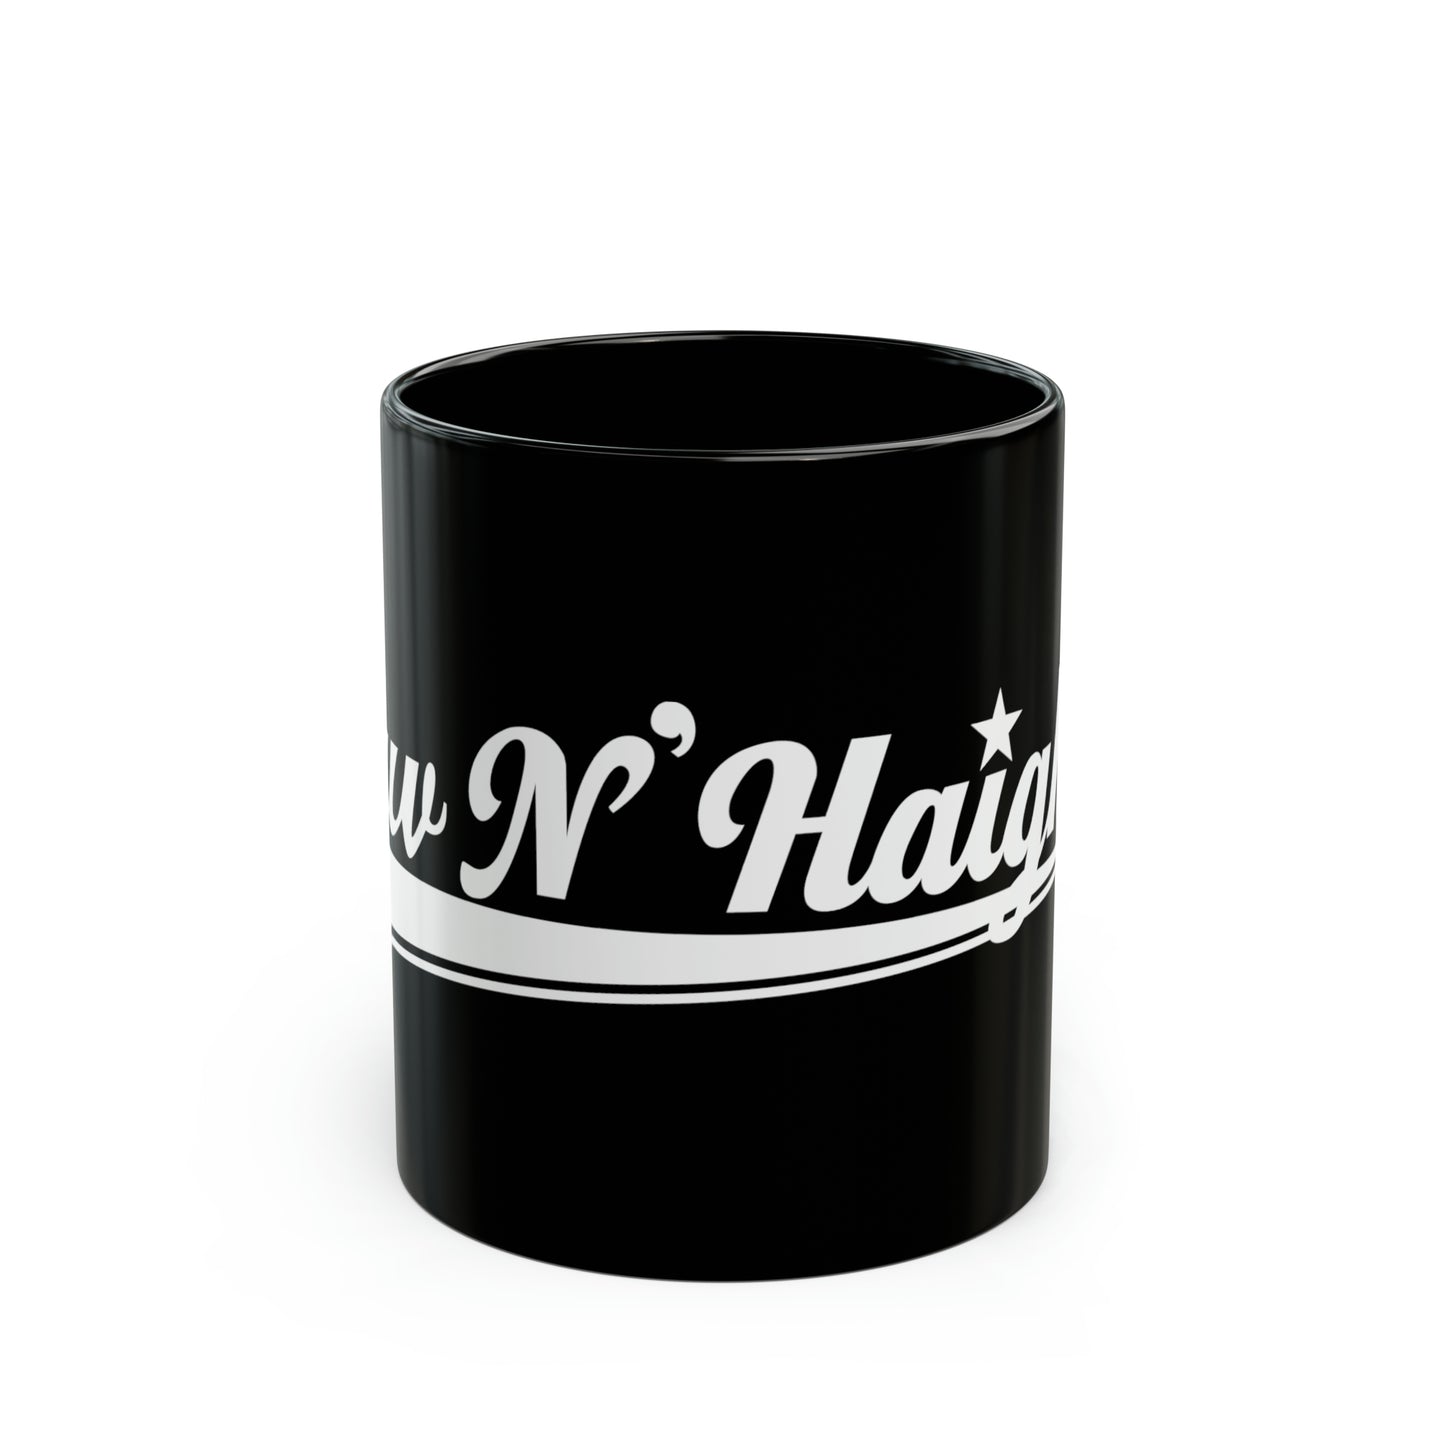 Luv N'Haight White Logo - Black Mug (11oz)